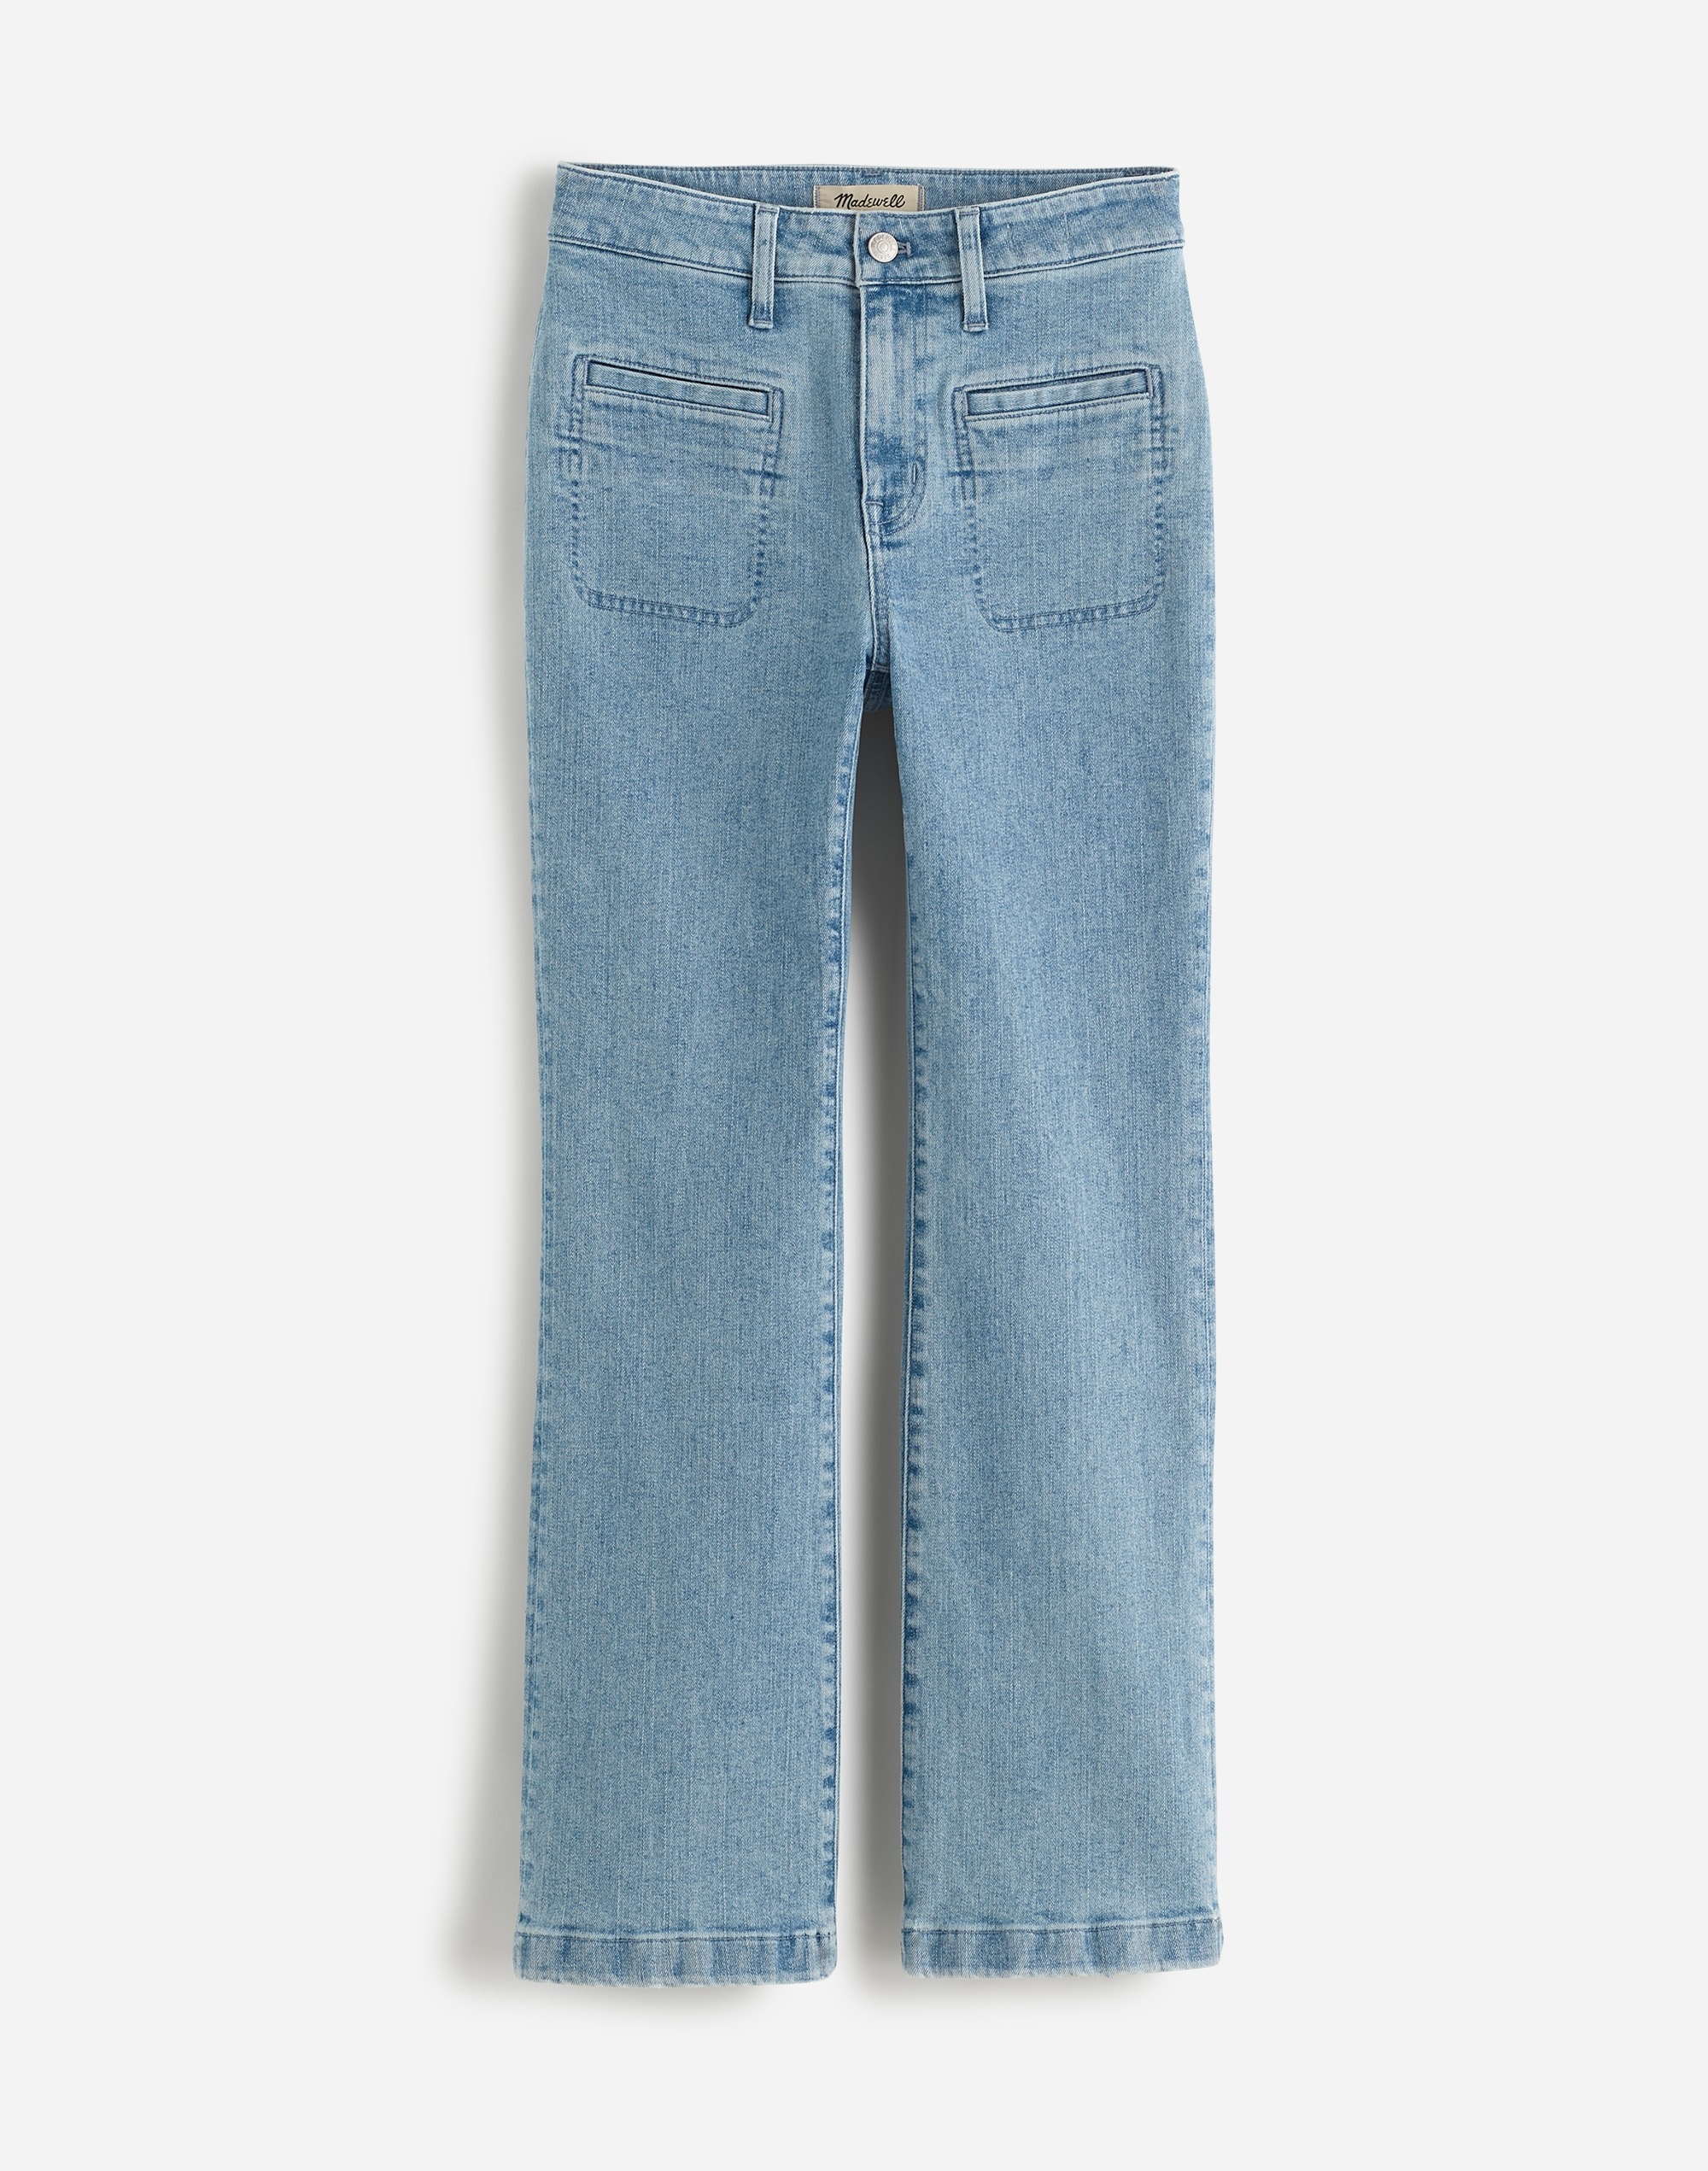 Plus Curvy Kick Out Crop Jeans Penman Wash: Patch Pocket Edition